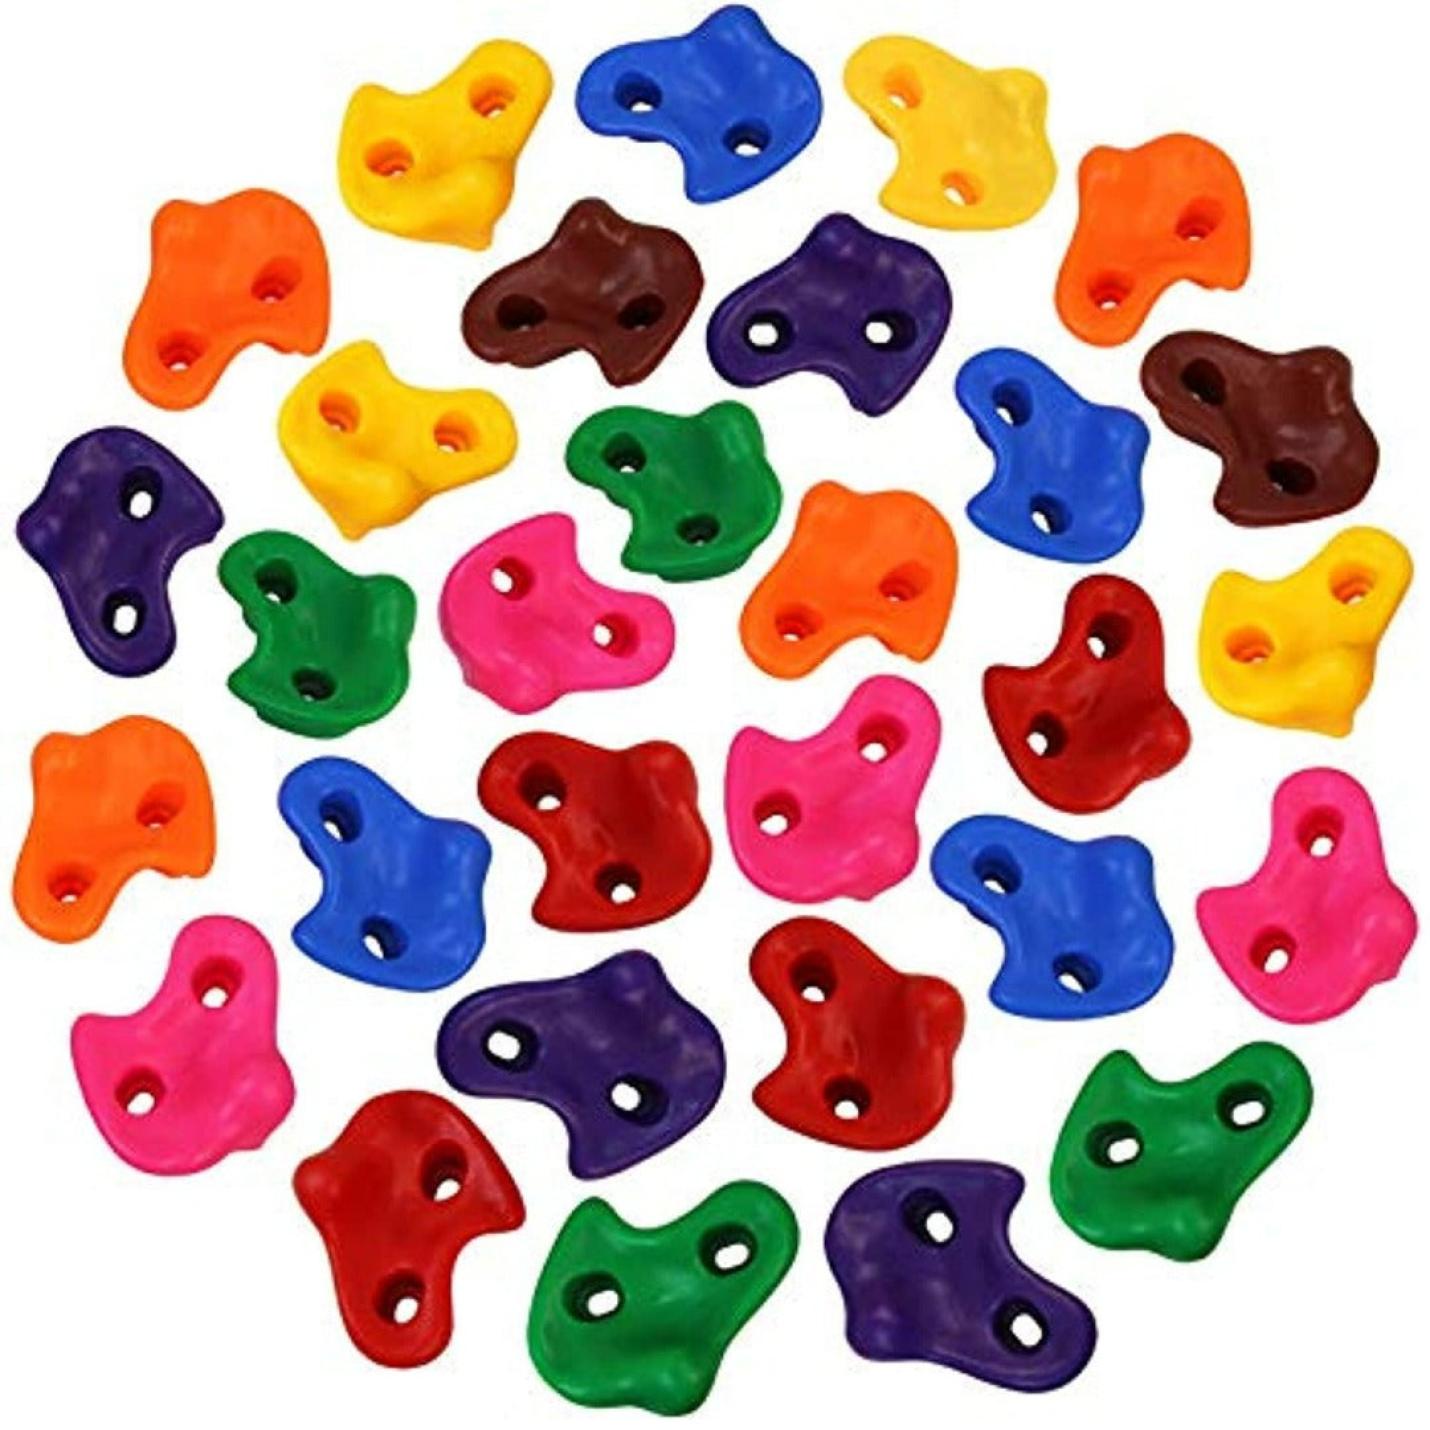 Klimstenen voor kinderen met verschillende vormen en kleuren - belastbaar tot 200 kg inclusief bevestigingsmateriaal